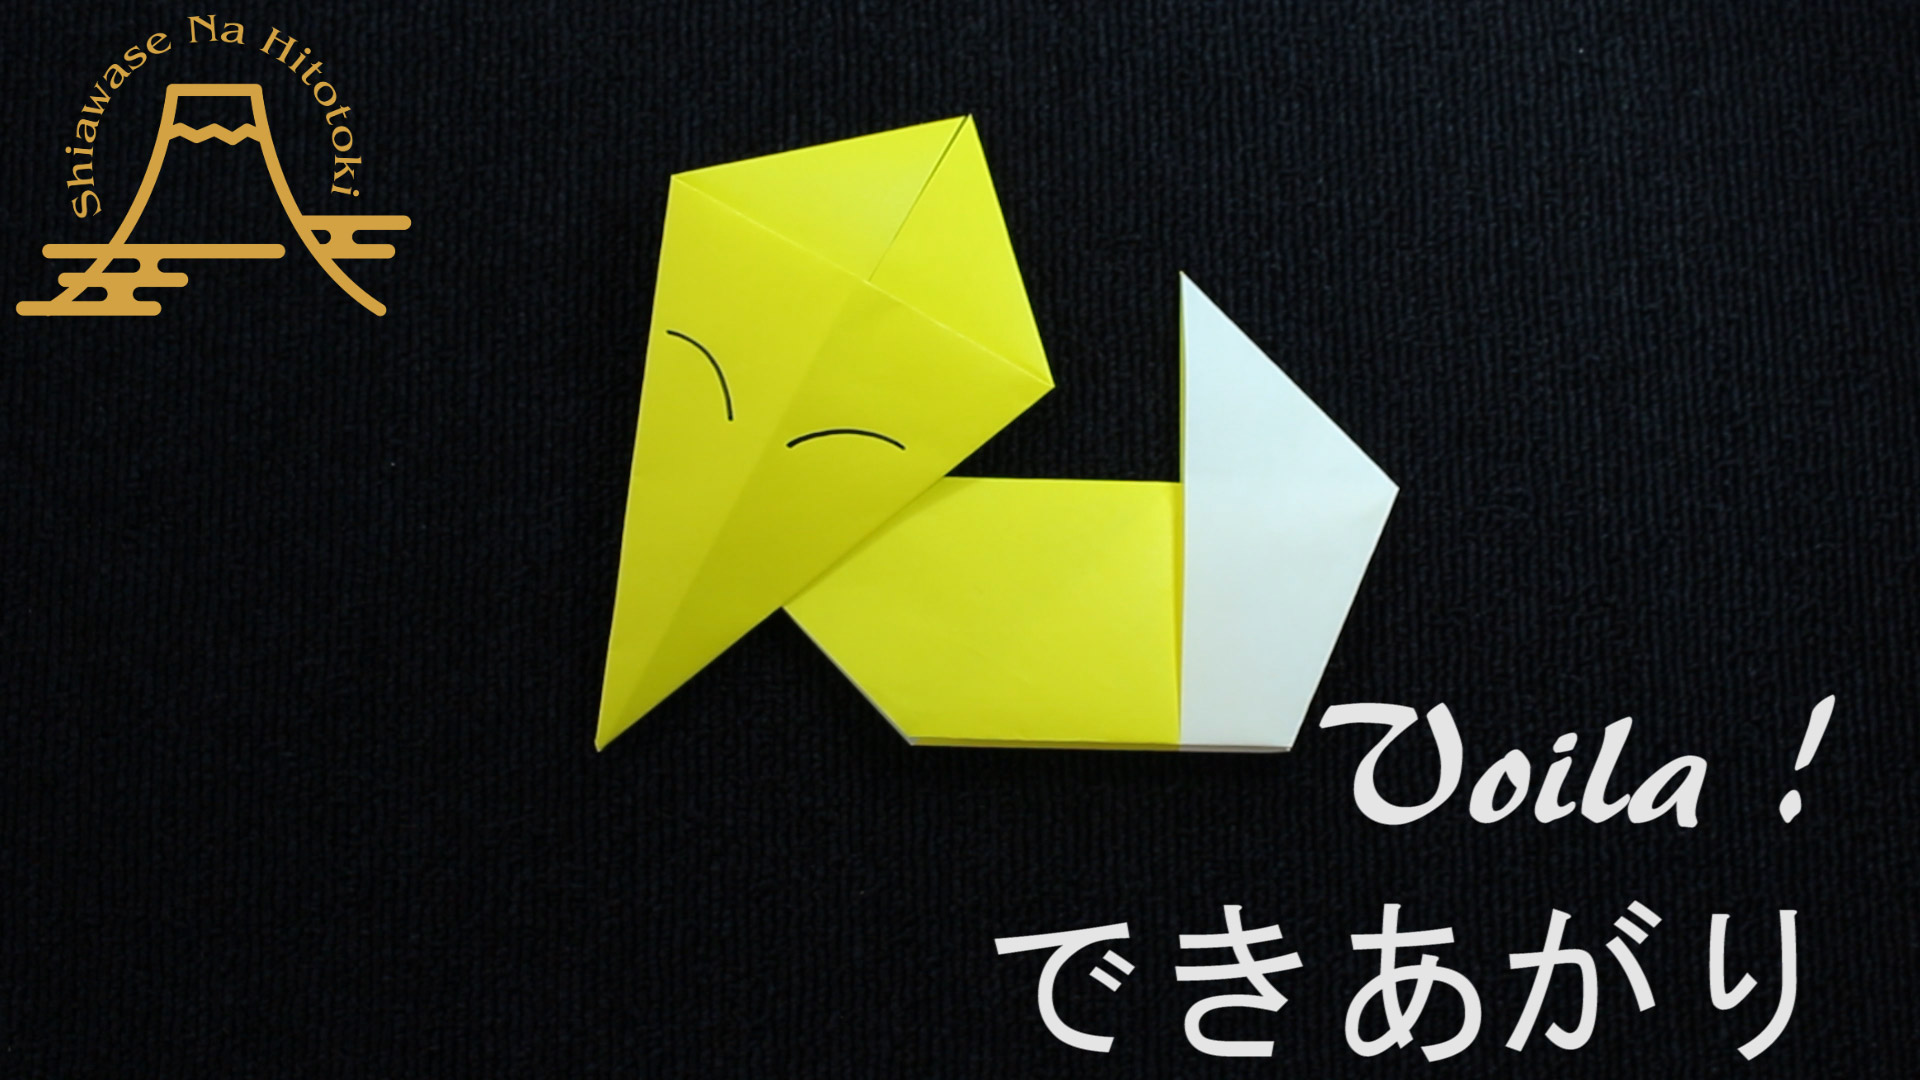 簡単 折り紙 きつねの折り方 簡単に可愛いきつねが折れますよ 折り紙の折り方 幸せなひと時